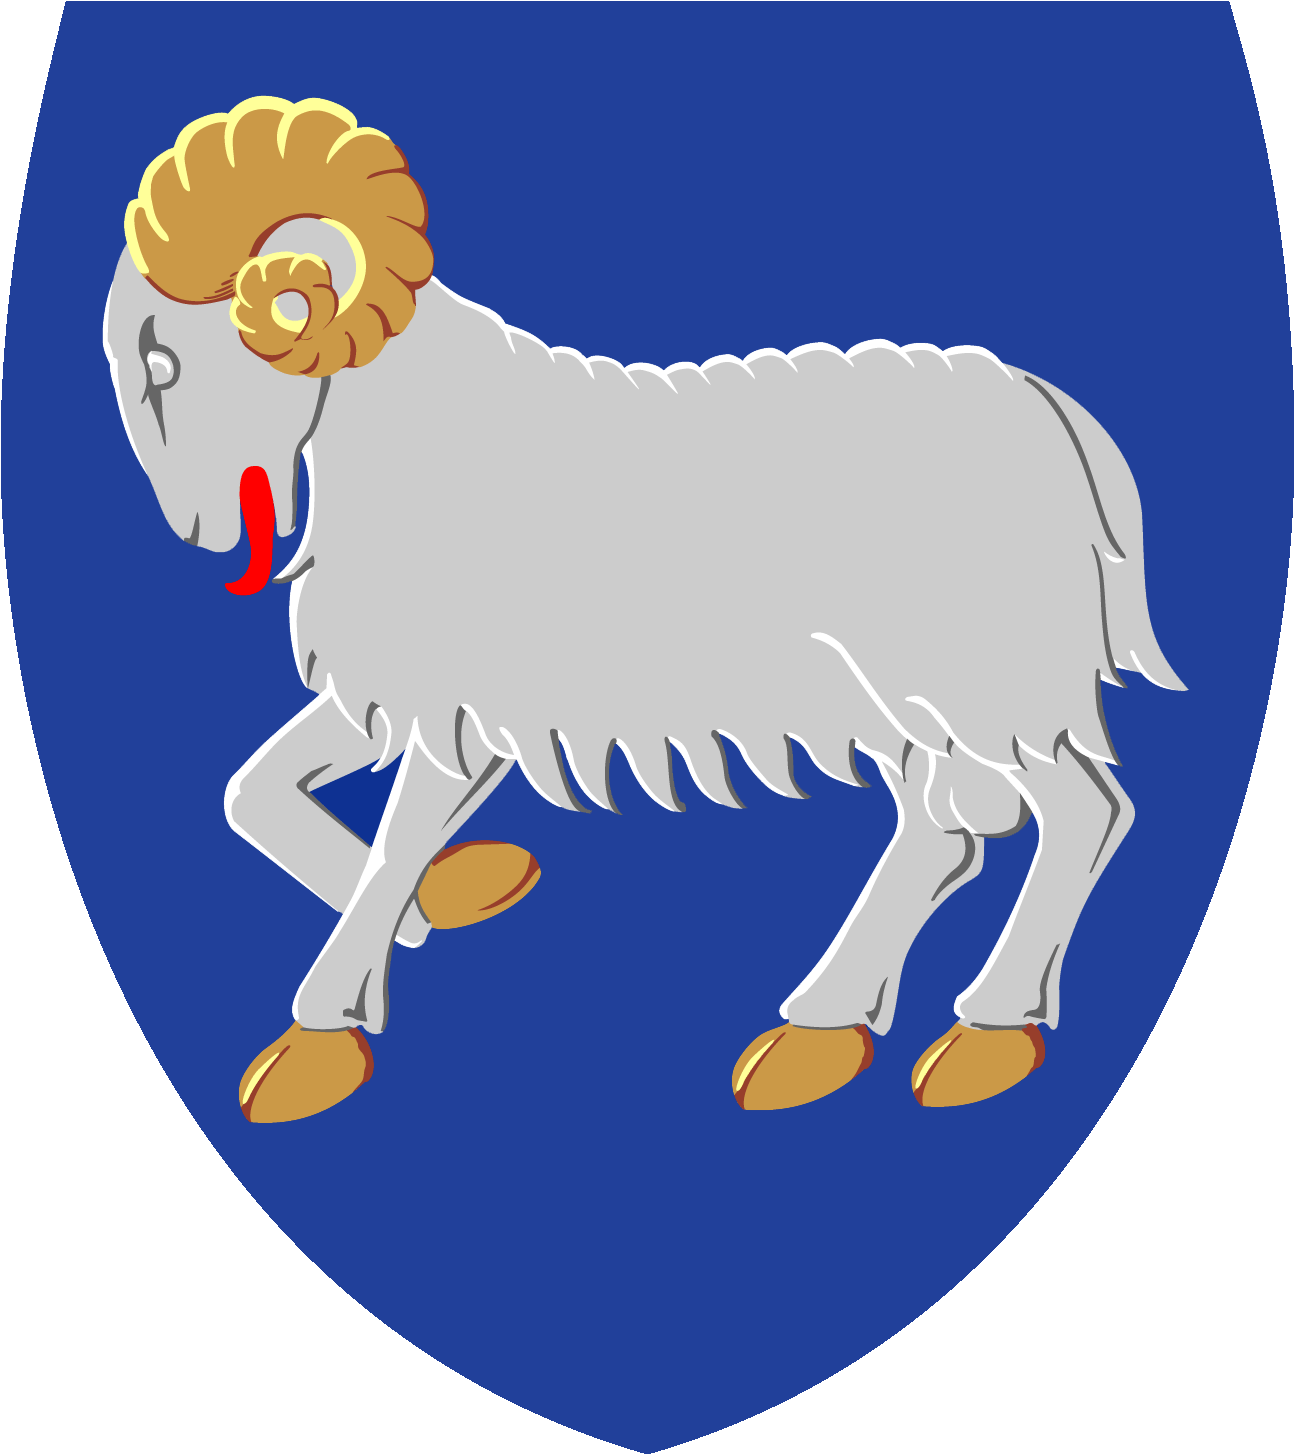 Faroe Islands - Faroe Islands Coat Of Arms (1466x1466)